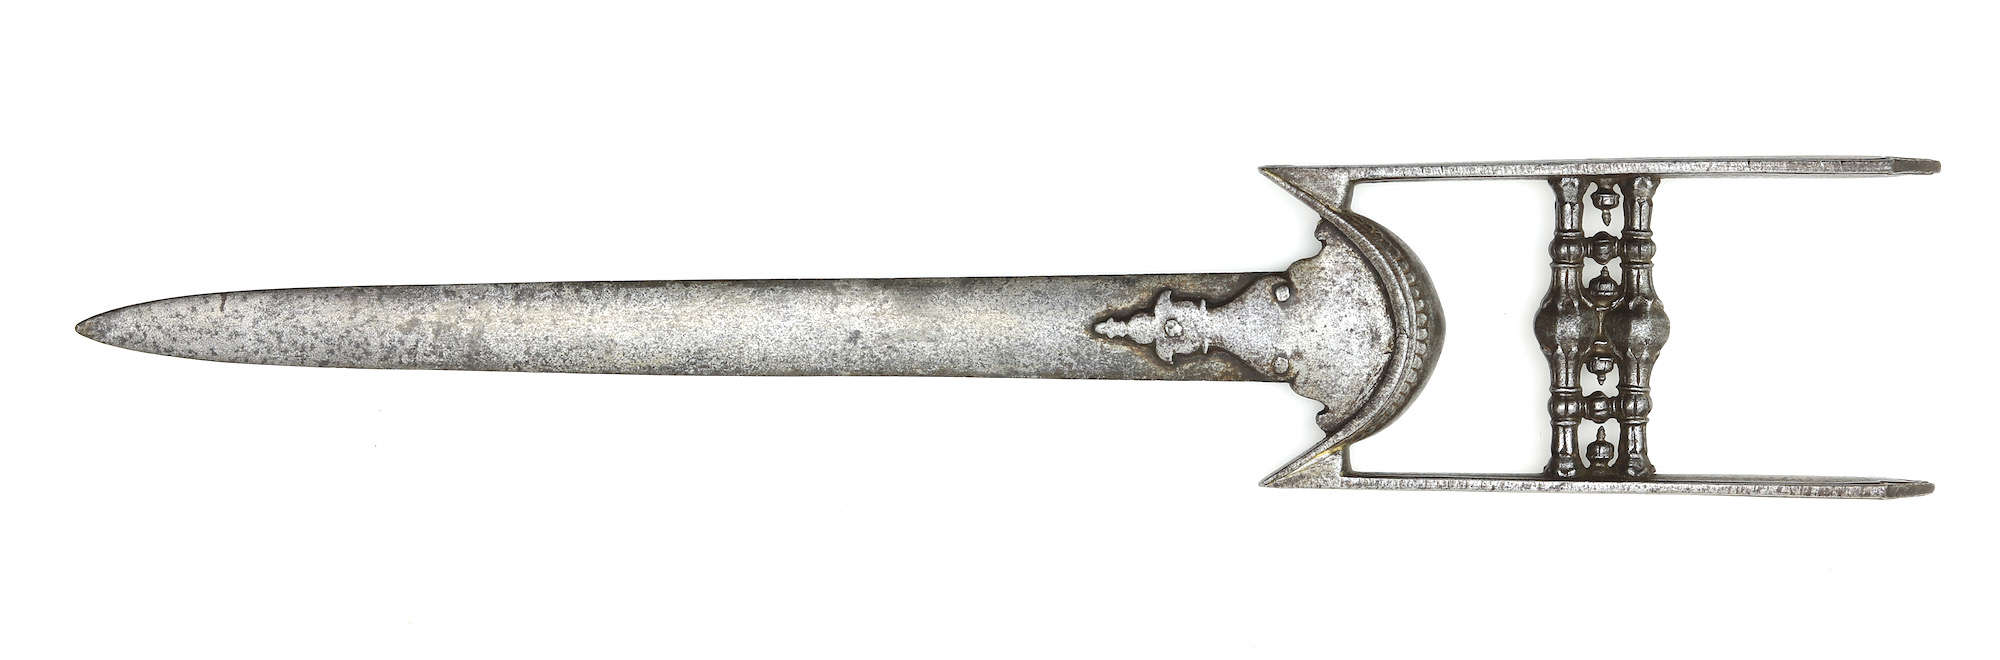 17th century chiseled iron katar